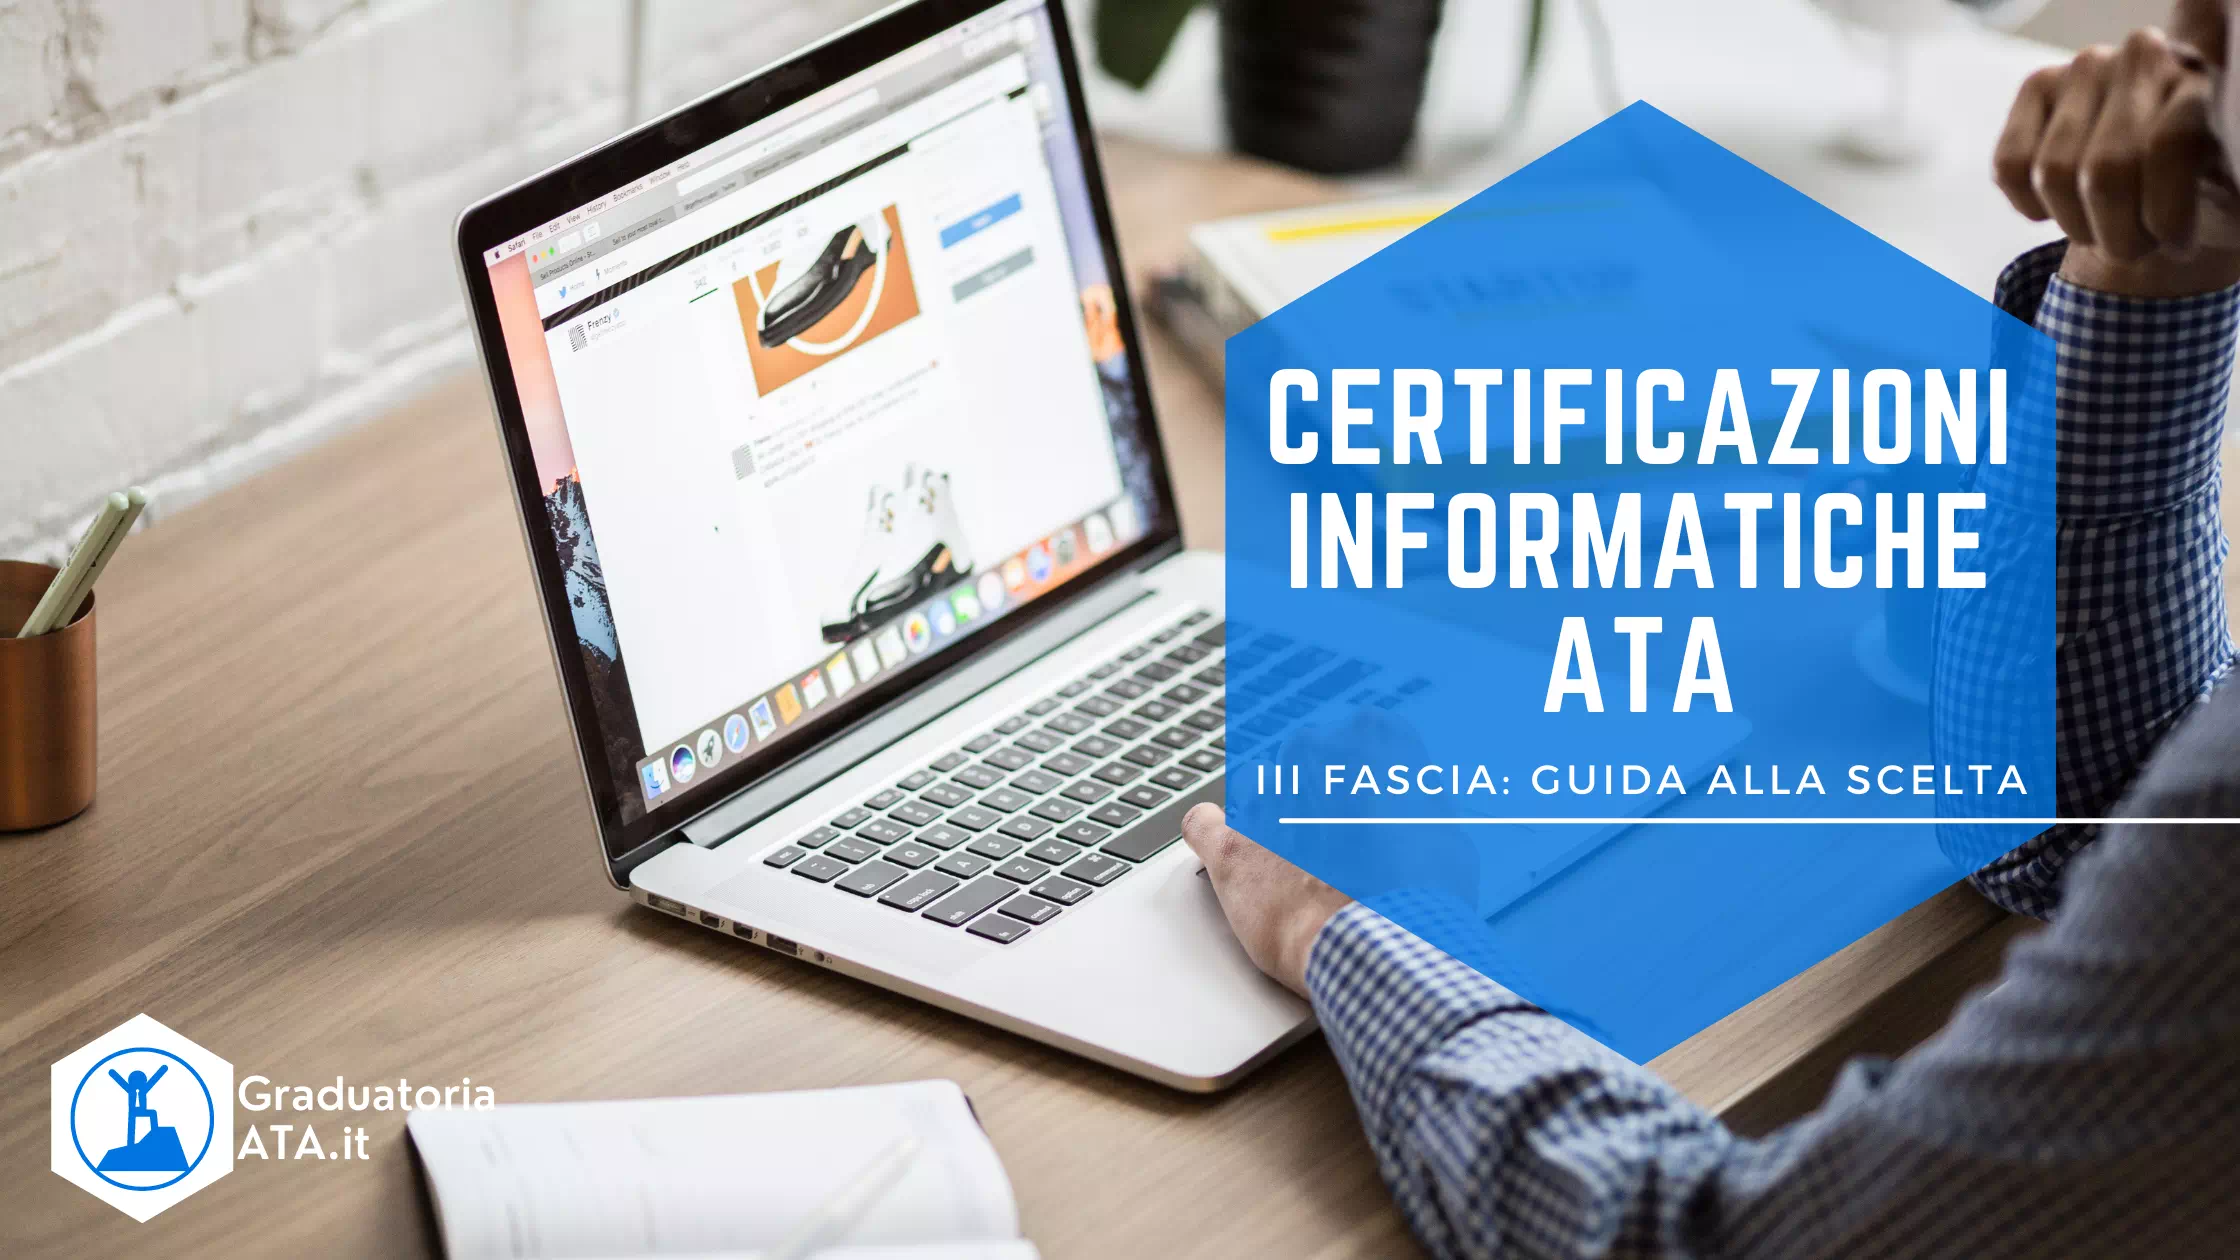 Certificazioni Informatiche ATA Terza Fascia: Guida alla Scelta